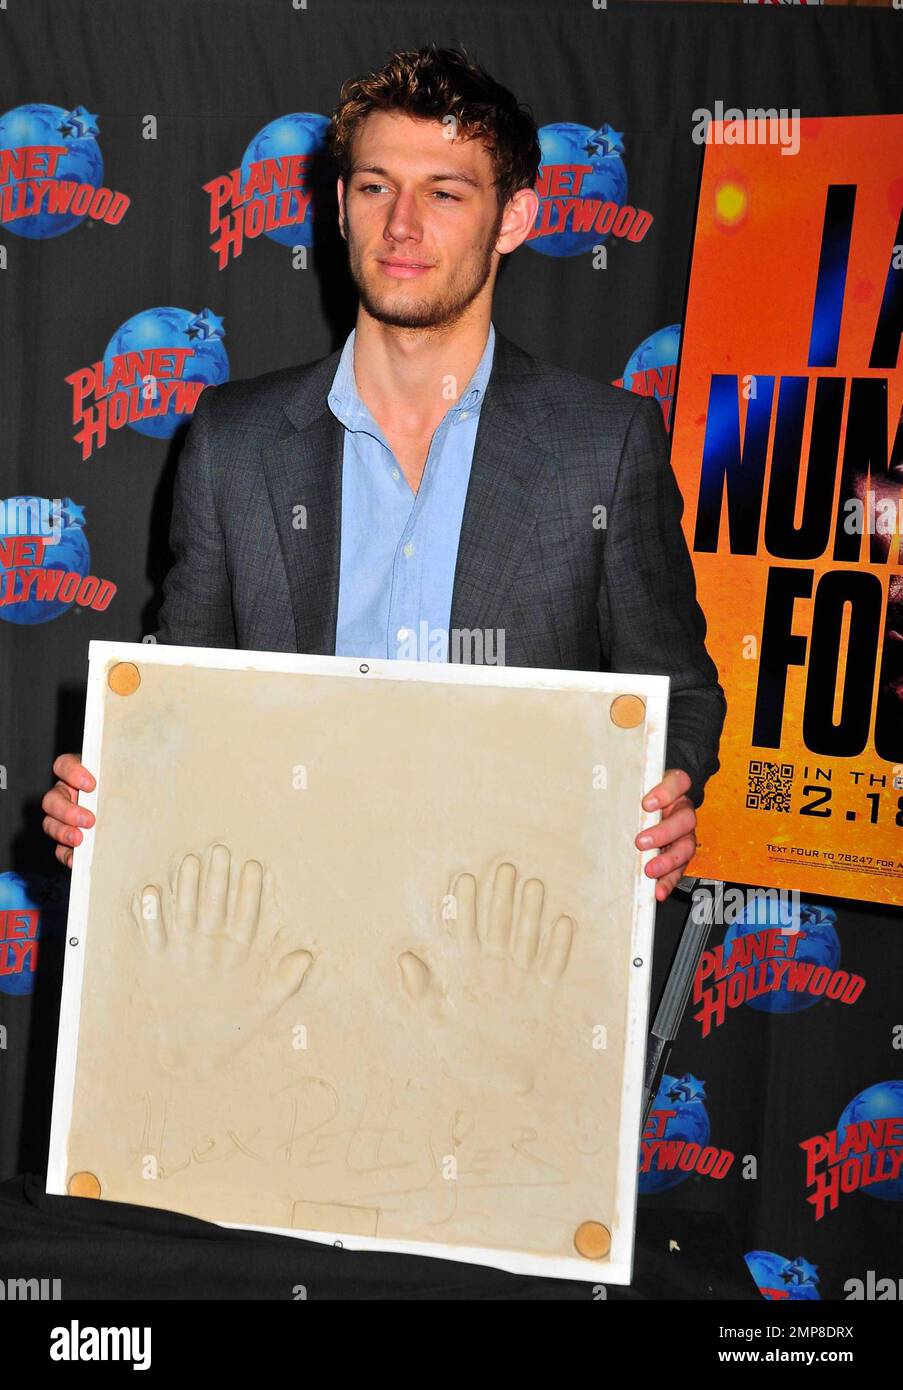 Alex Pettyfer promuove il suo nuovo film 'i Am Number Four' durante una  cerimonia di stampa a mano al Planet Hollywood, Times Square. New York, NY.  2/7/11 Foto stock - Alamy